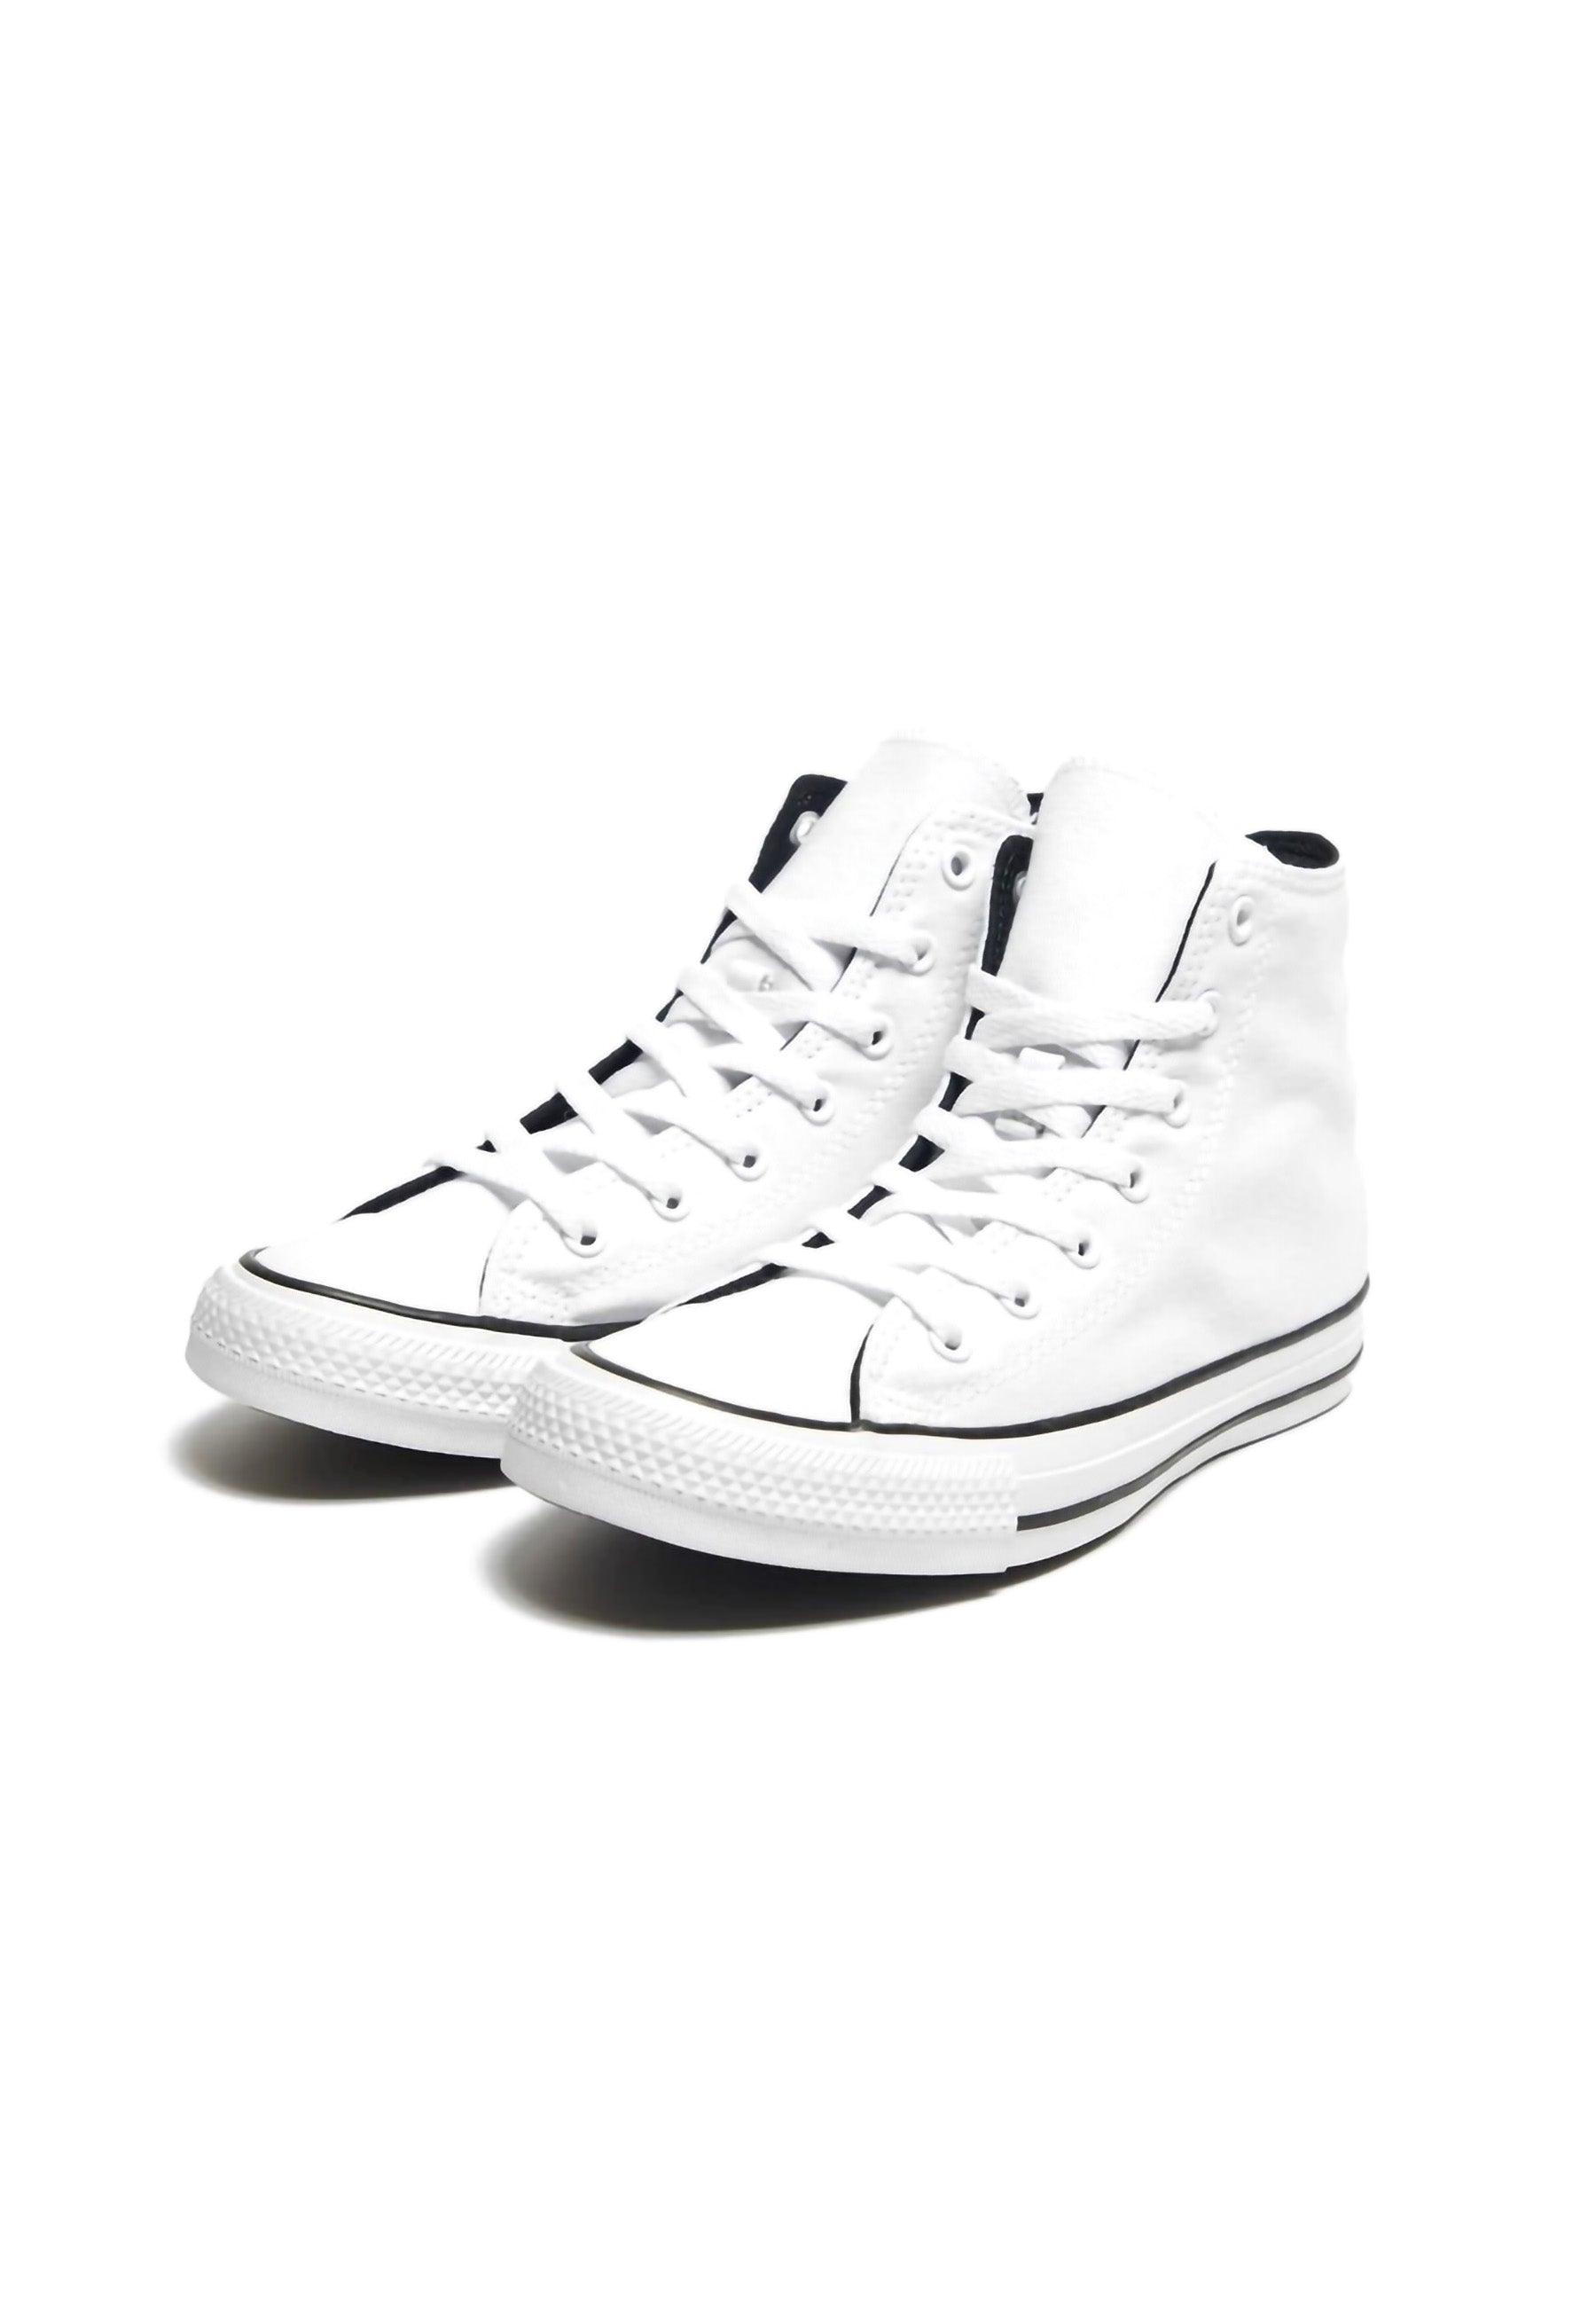 CONVERSE Chuck Taylor All Star Hi Sneaker Donna White Black A02608C - Sandrini Calzature e Abbigliamento